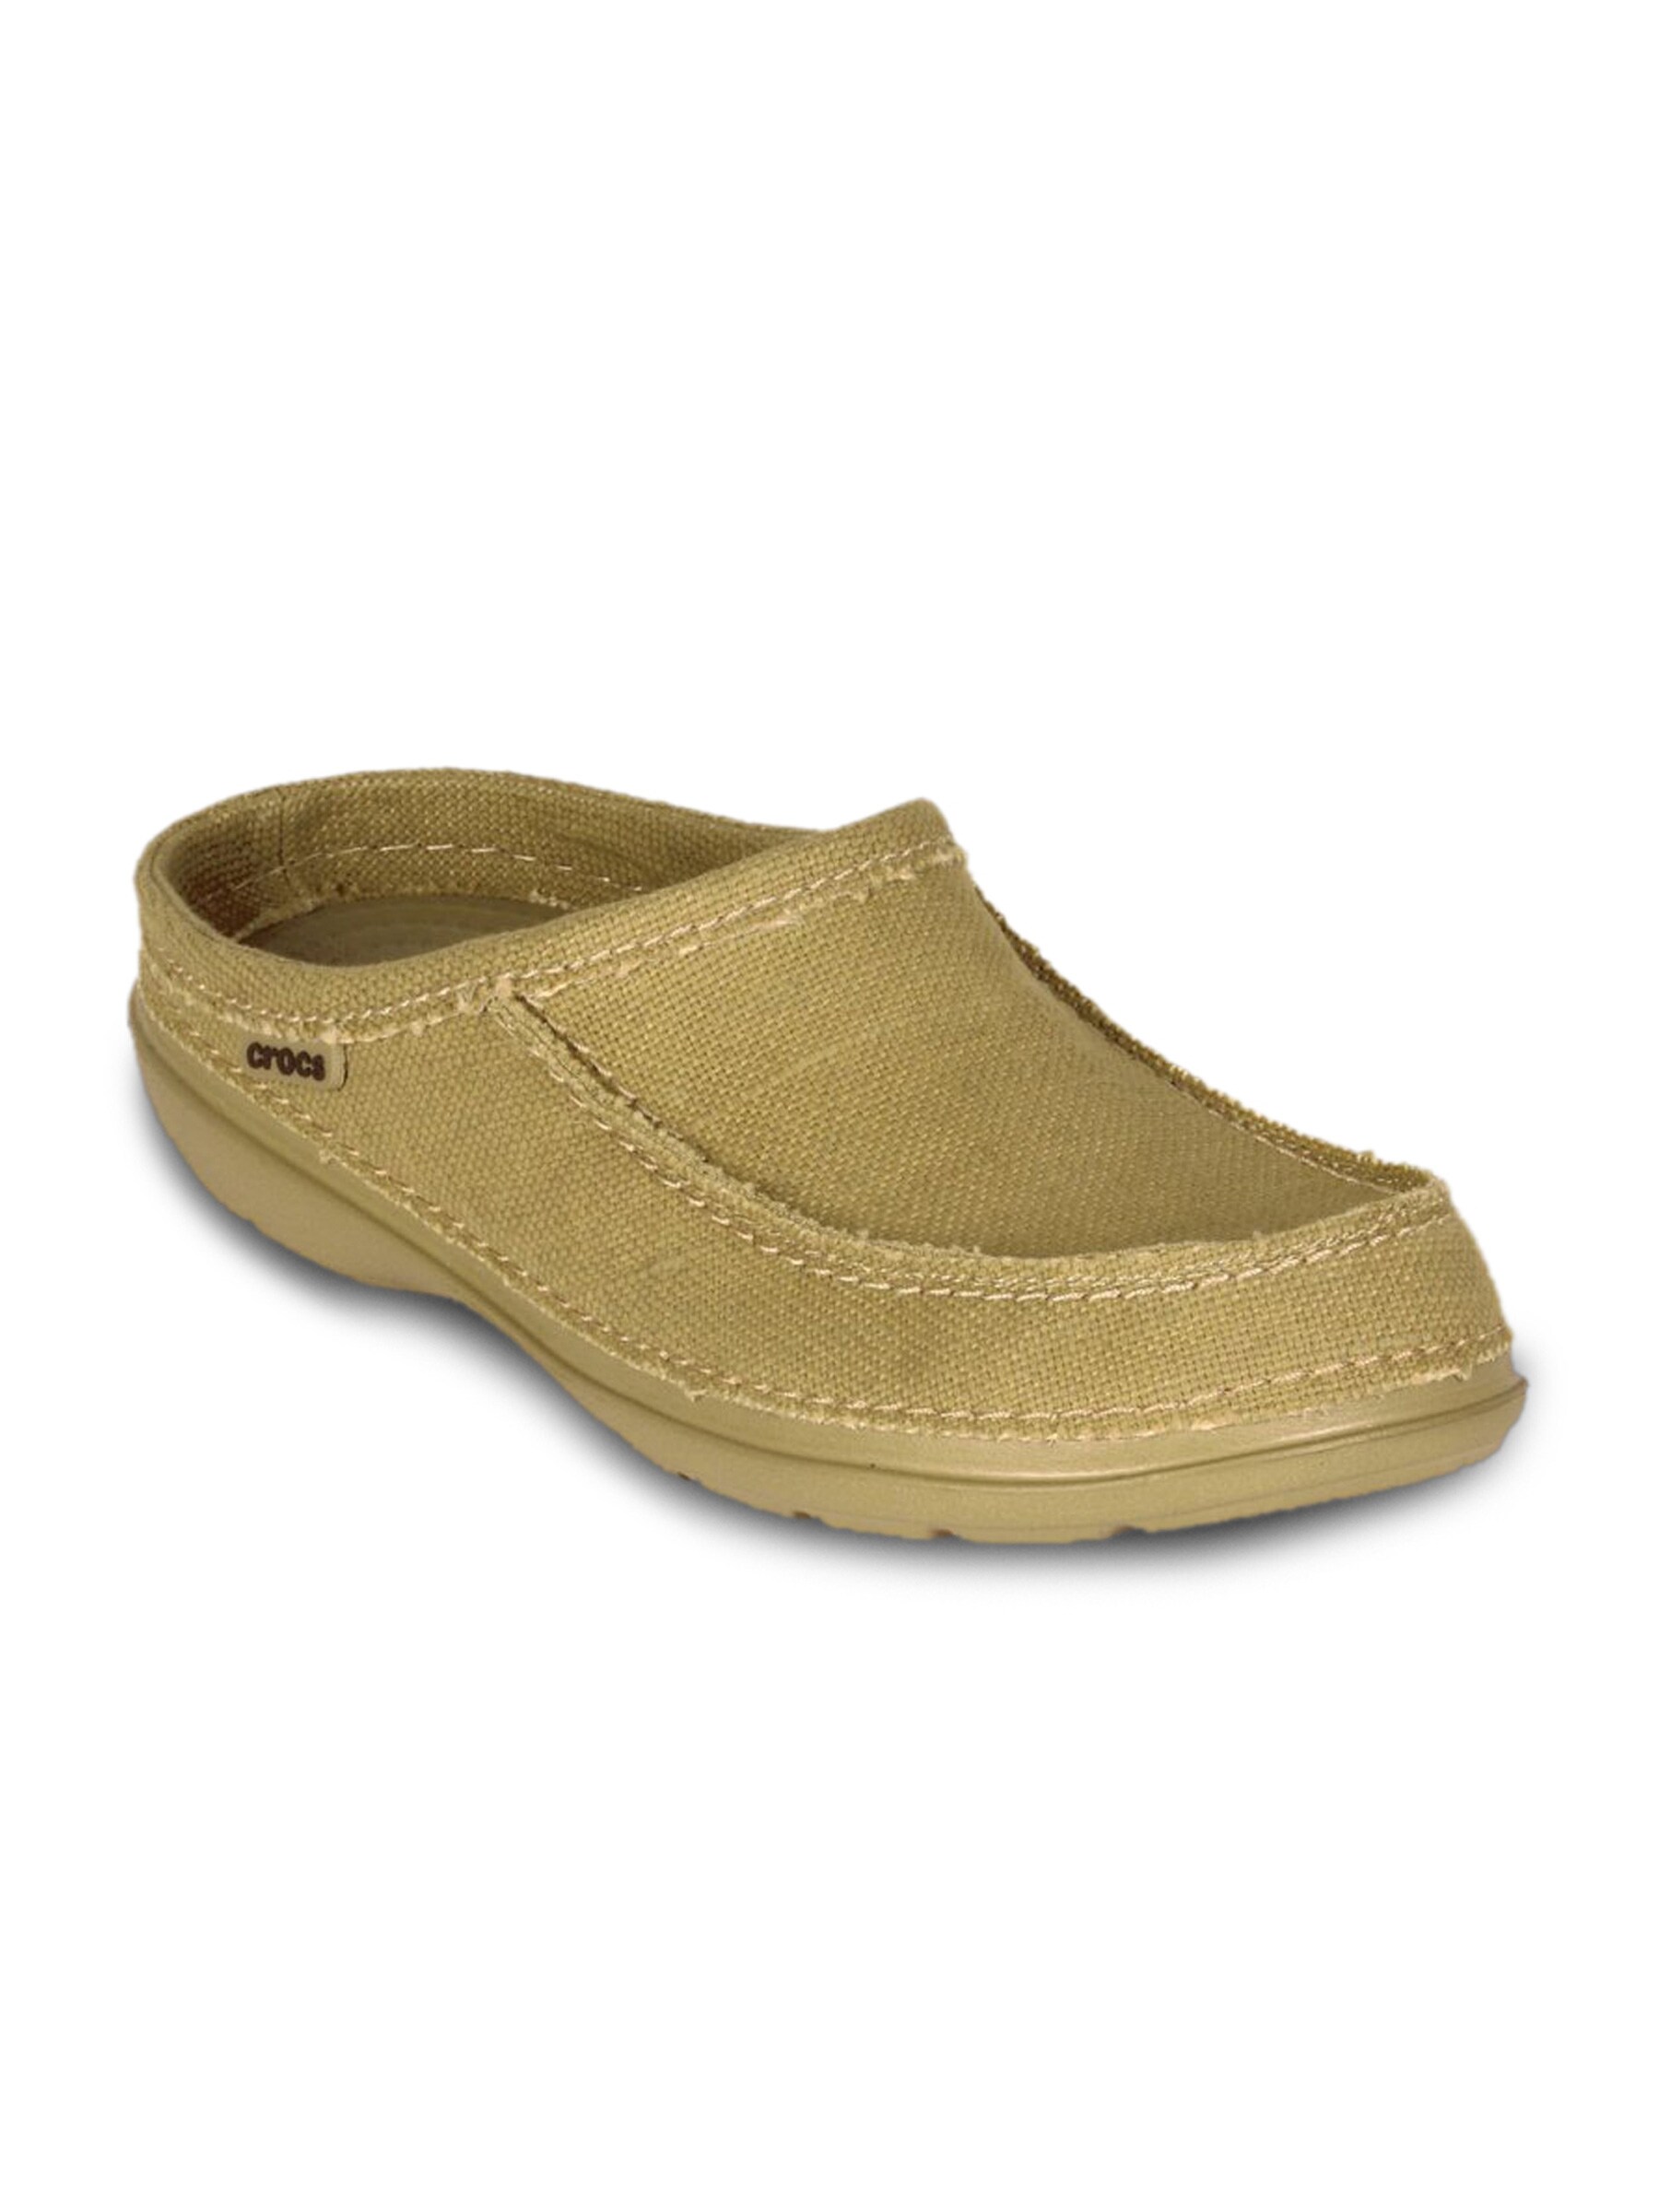 Crocs Men Santa Cruz Clog Khaki Sandal